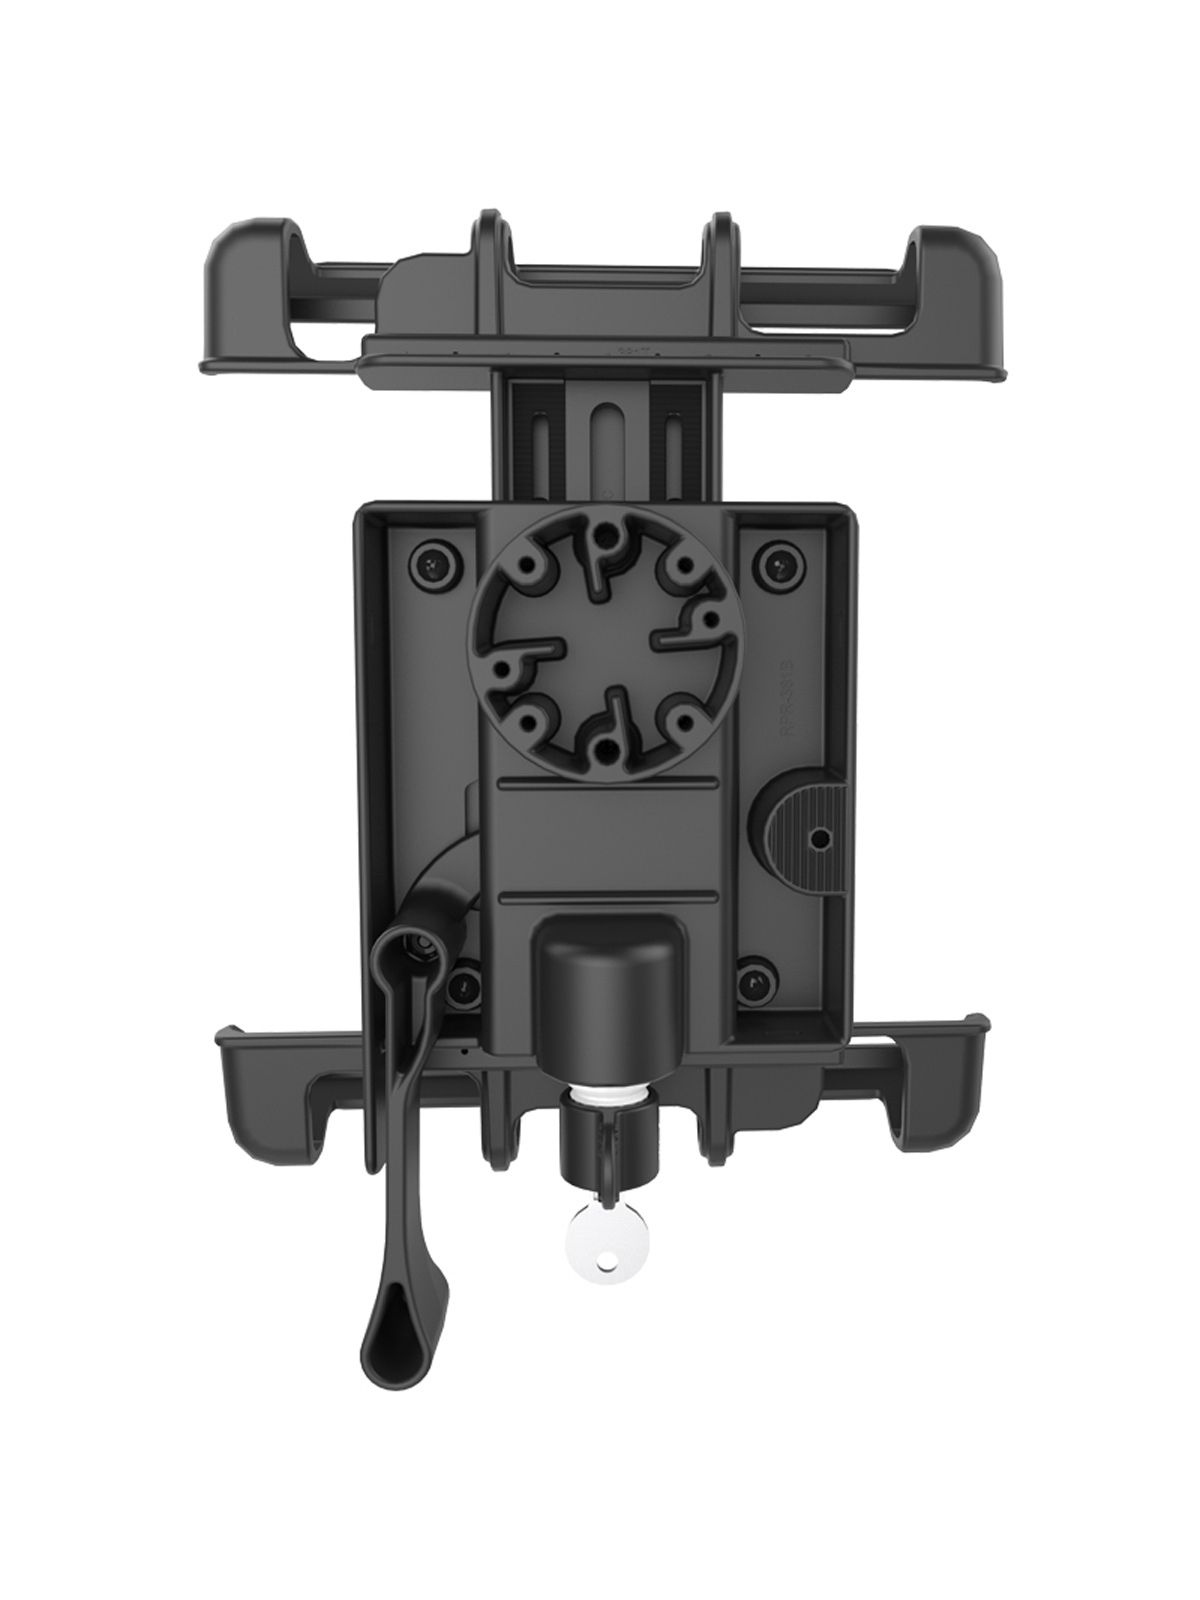 RAM Mounts Universal Tab-Lock Halteschale (abschließbar) für 10 Zoll Tablets (in Schutzgehäusen) - AMPS-Aufnahme, Schrauben-Set